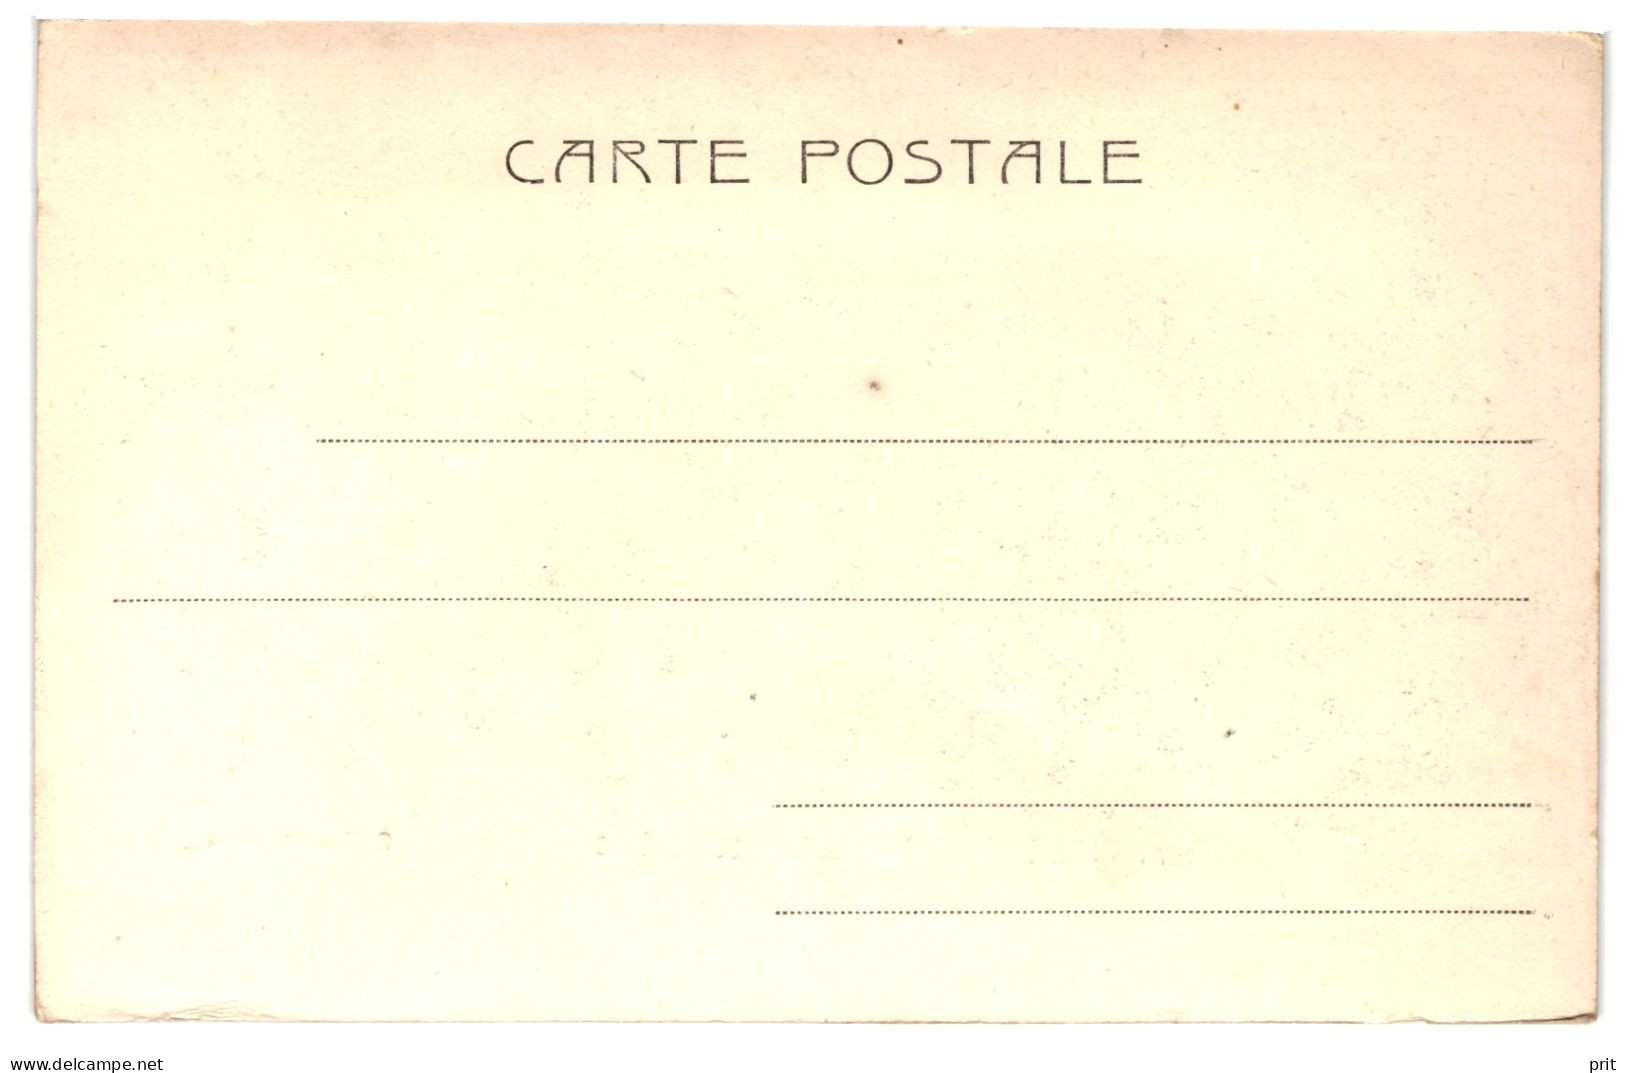 Montecassino Lato Occidentale 1910s Unused Postcard. Publisher Alterocca Terni - Frosinone